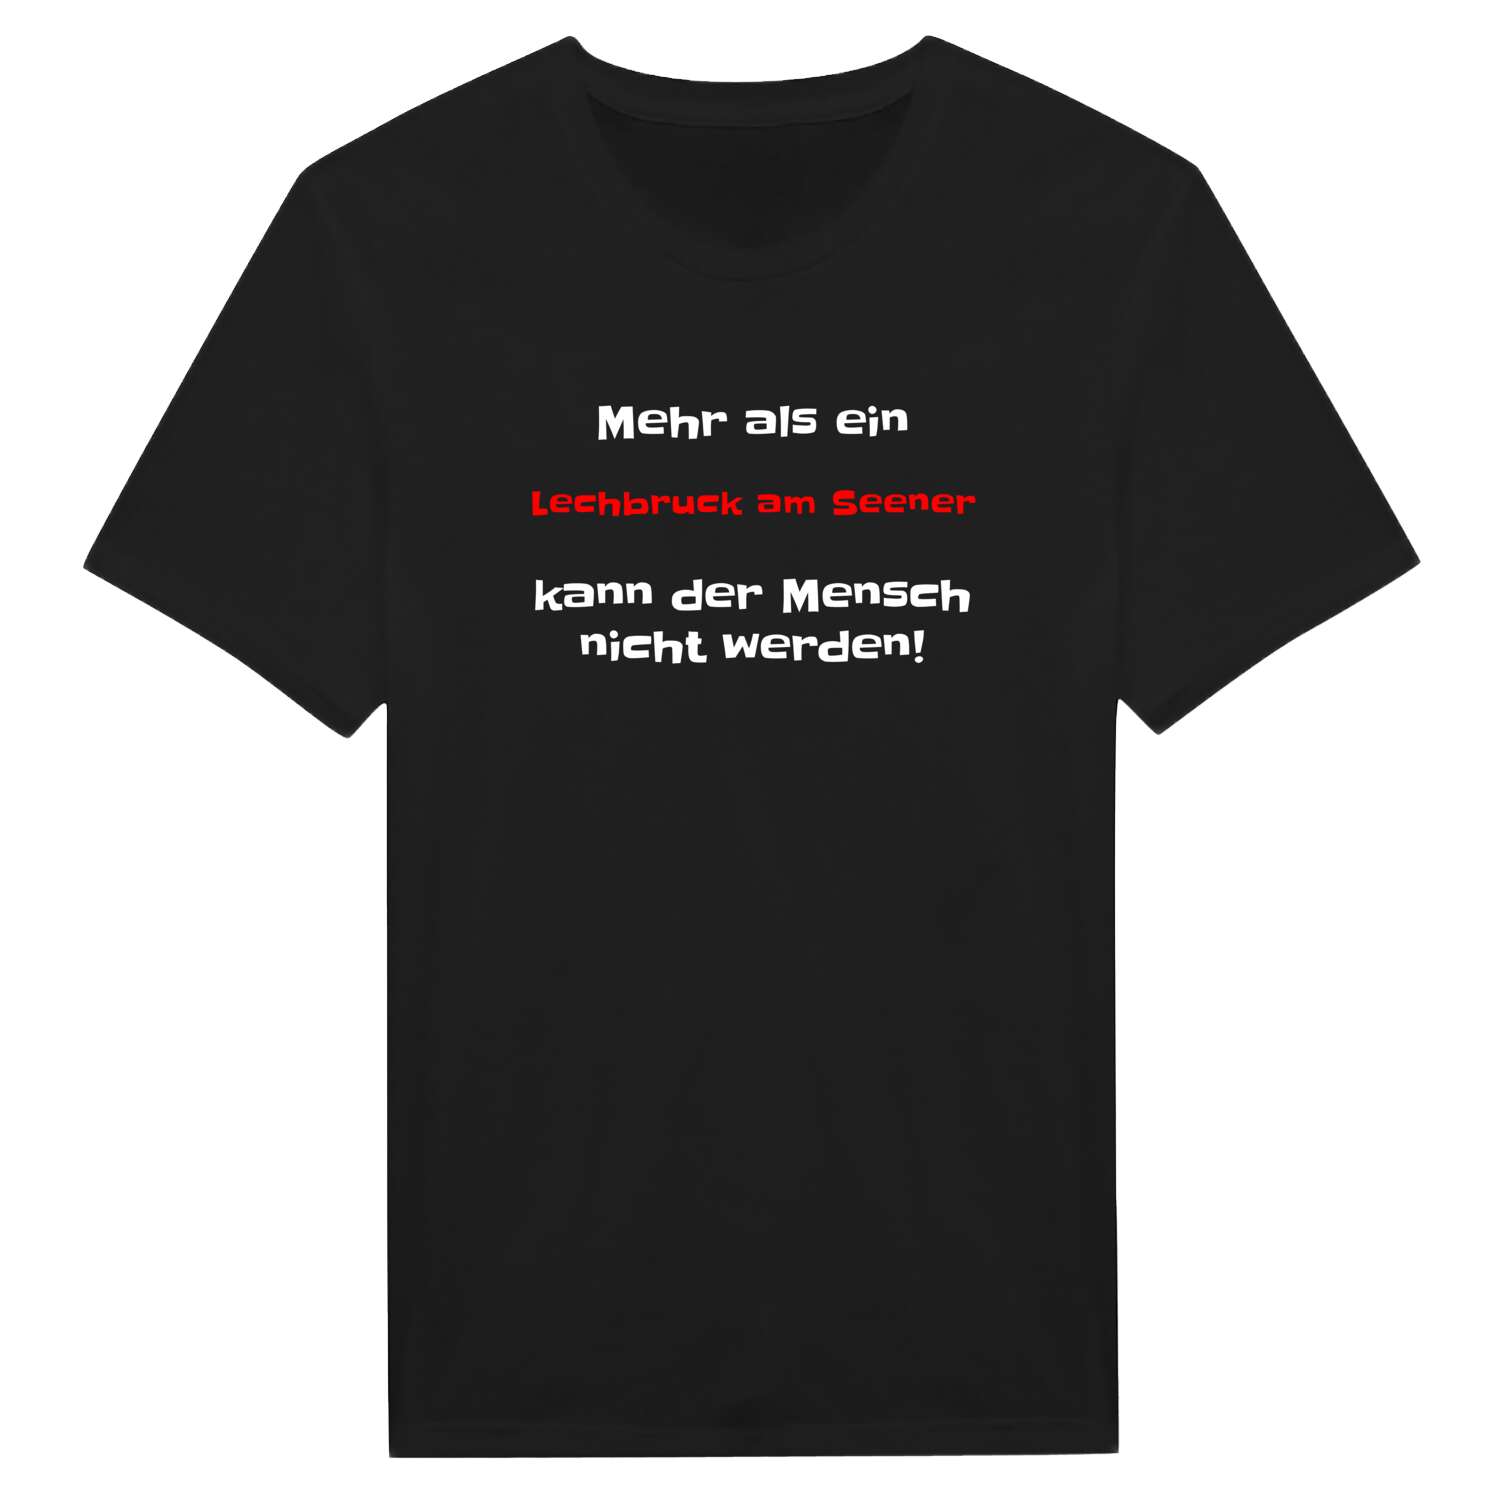 Lechbruck am See T-Shirt »Mehr als ein«